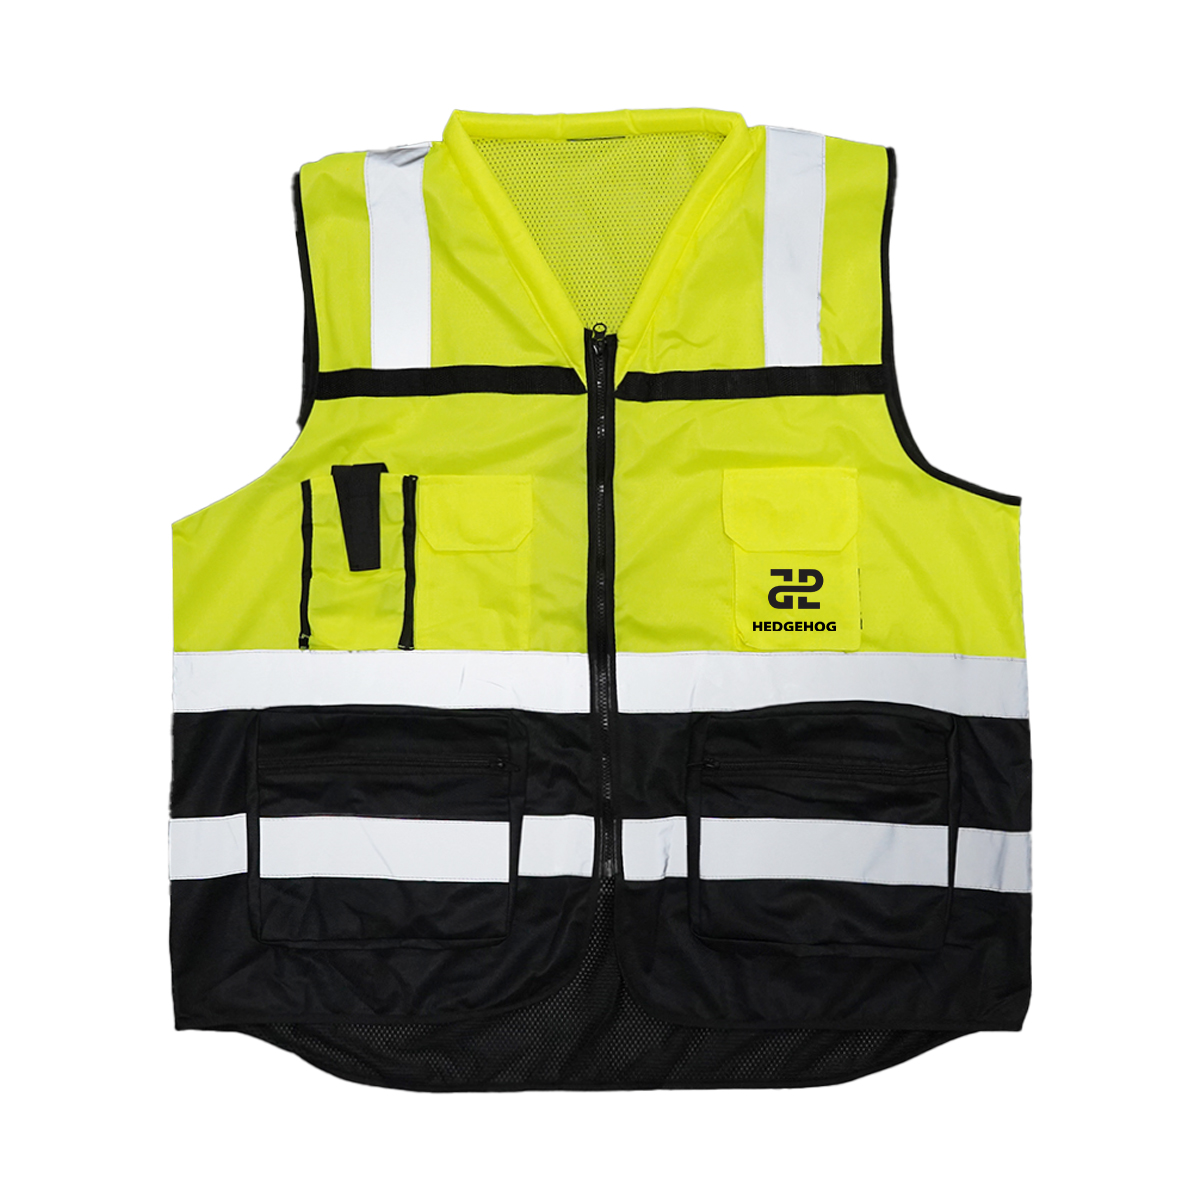 High Visibility Reflective Safety Vest